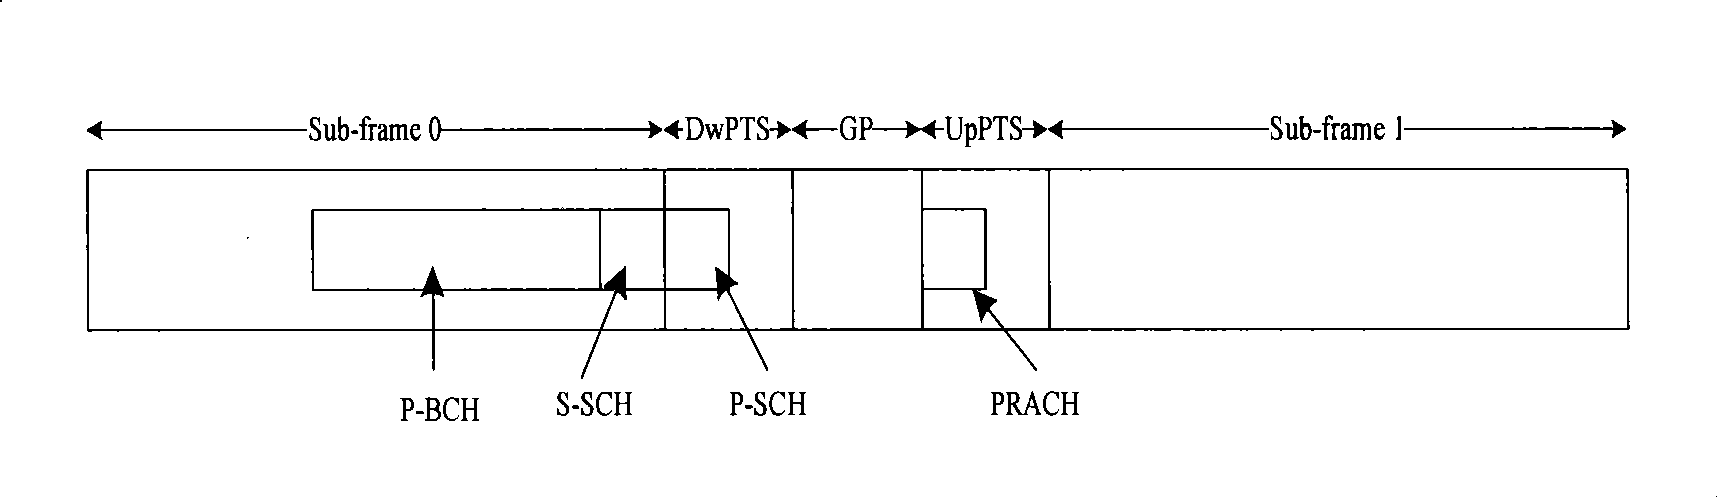 Data transmission method of TDD system